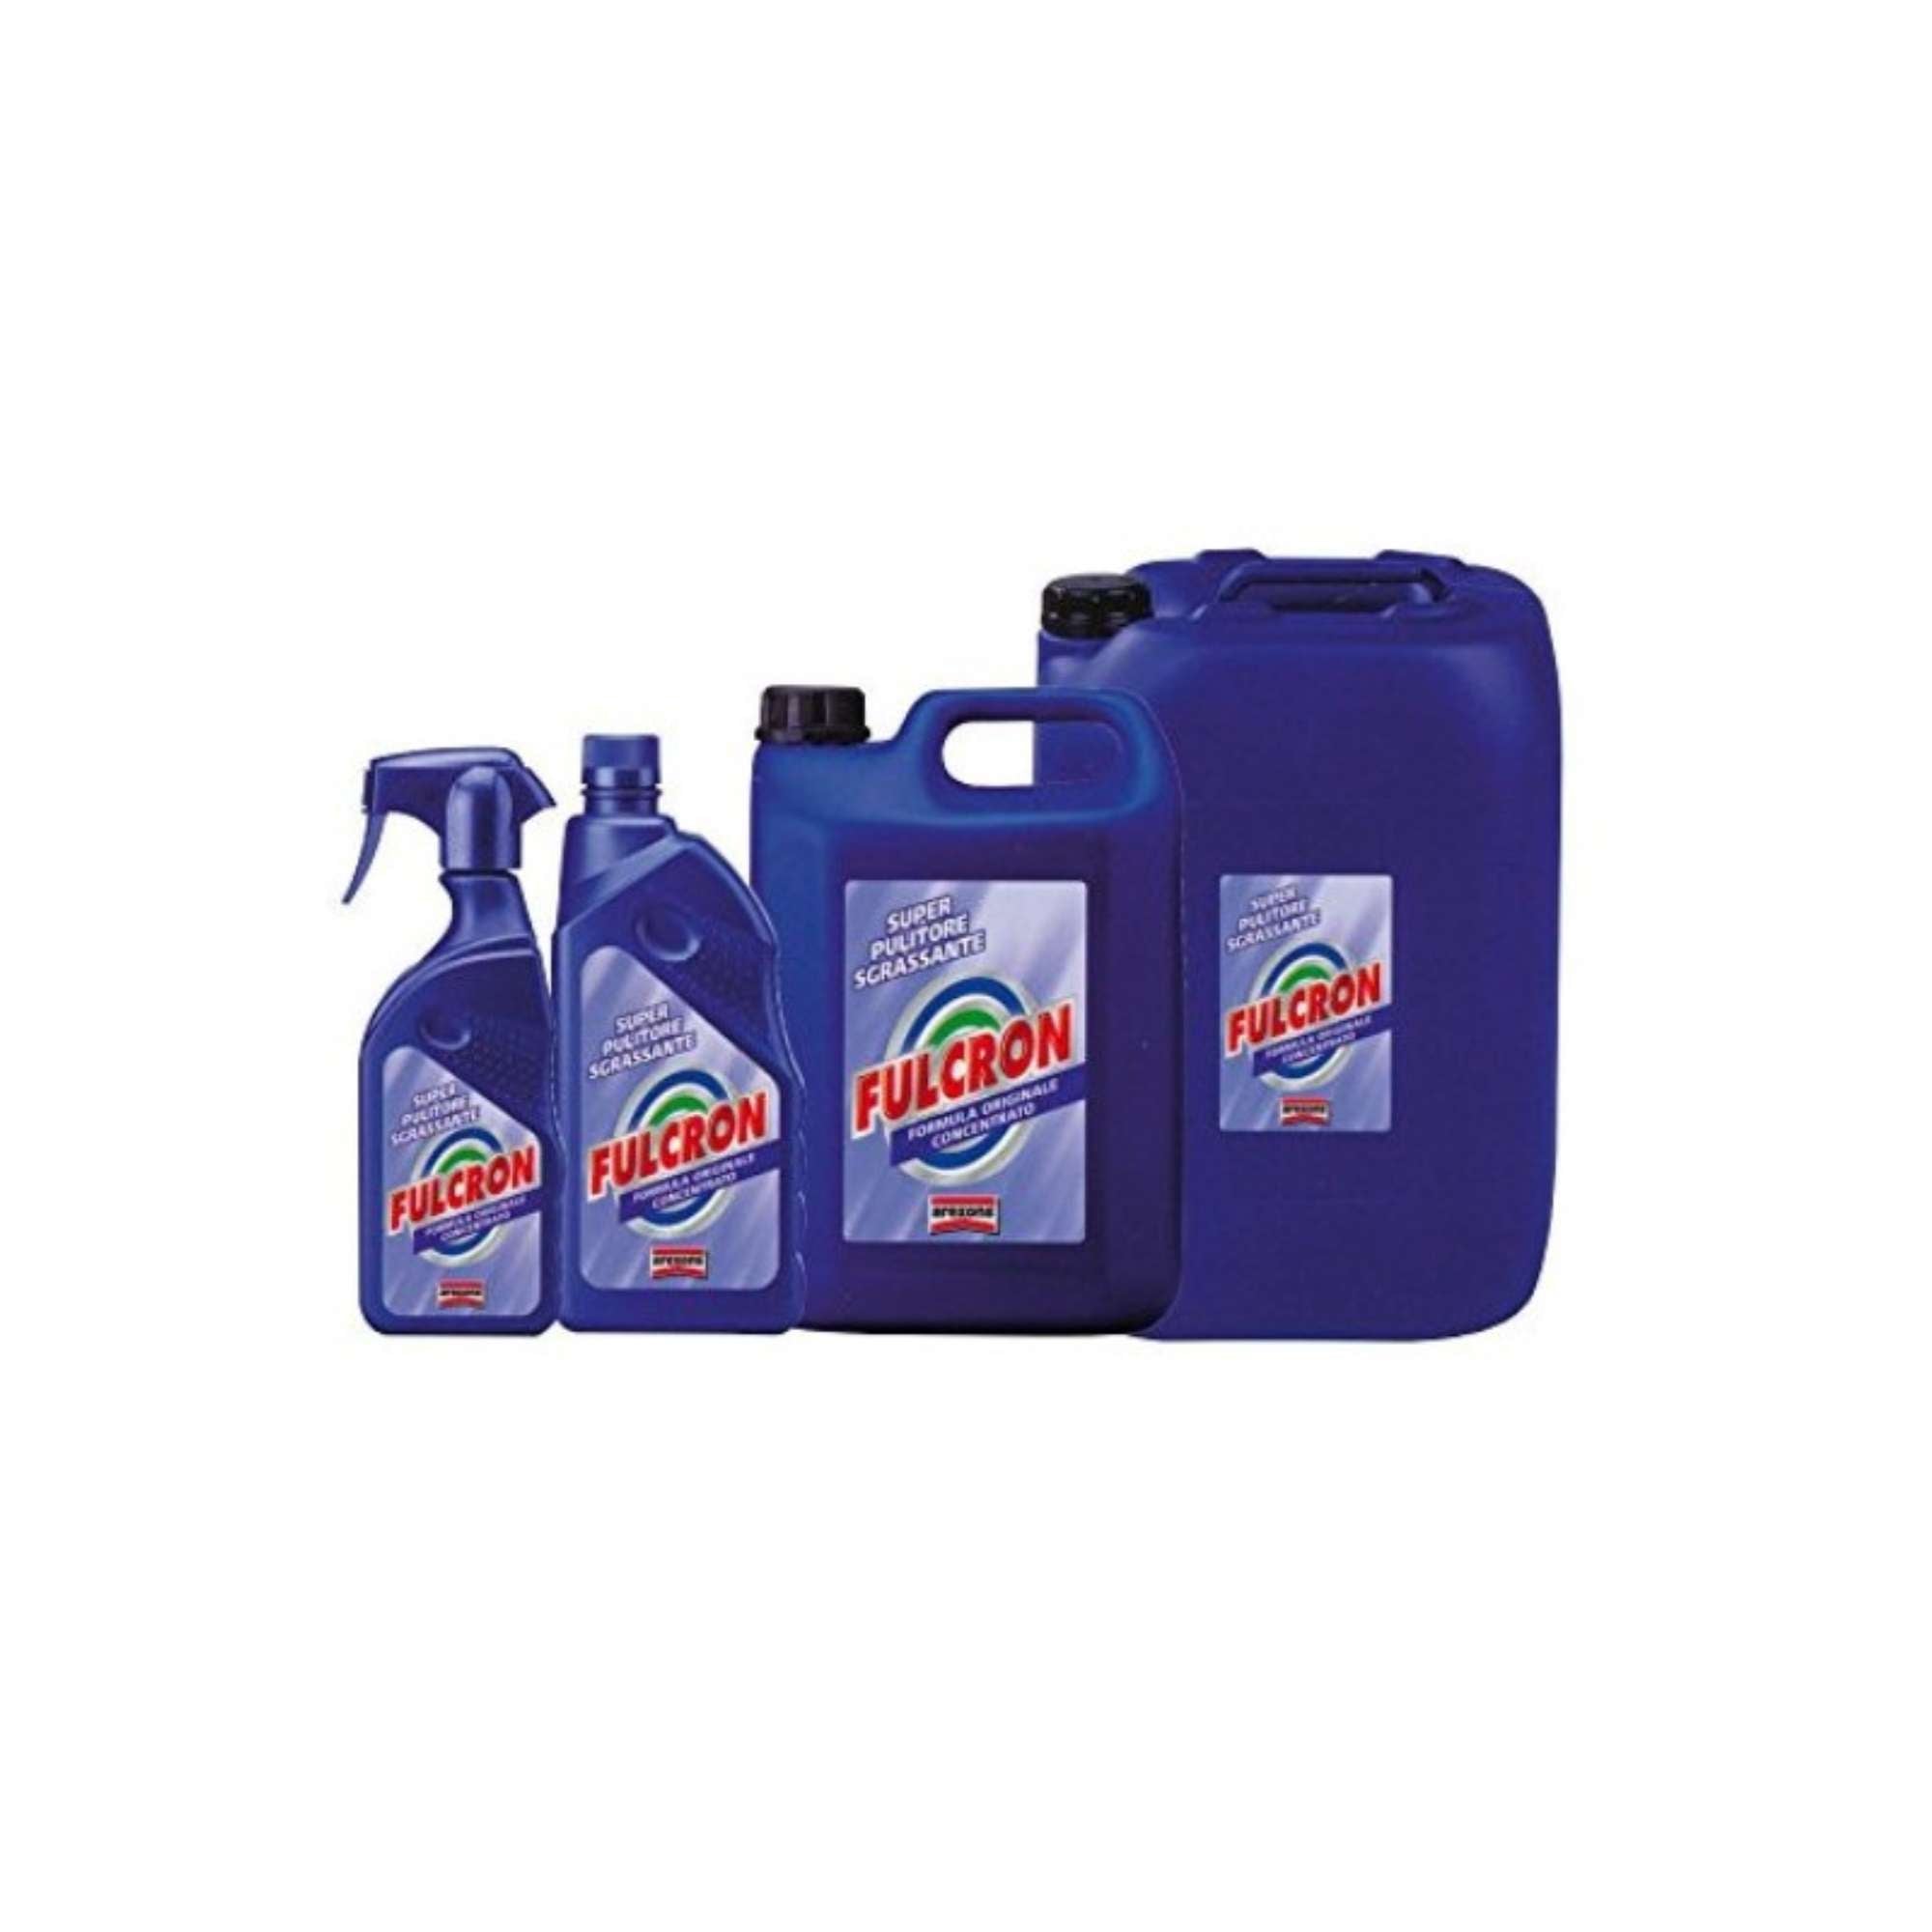 Detergente Fulcron - Arexons